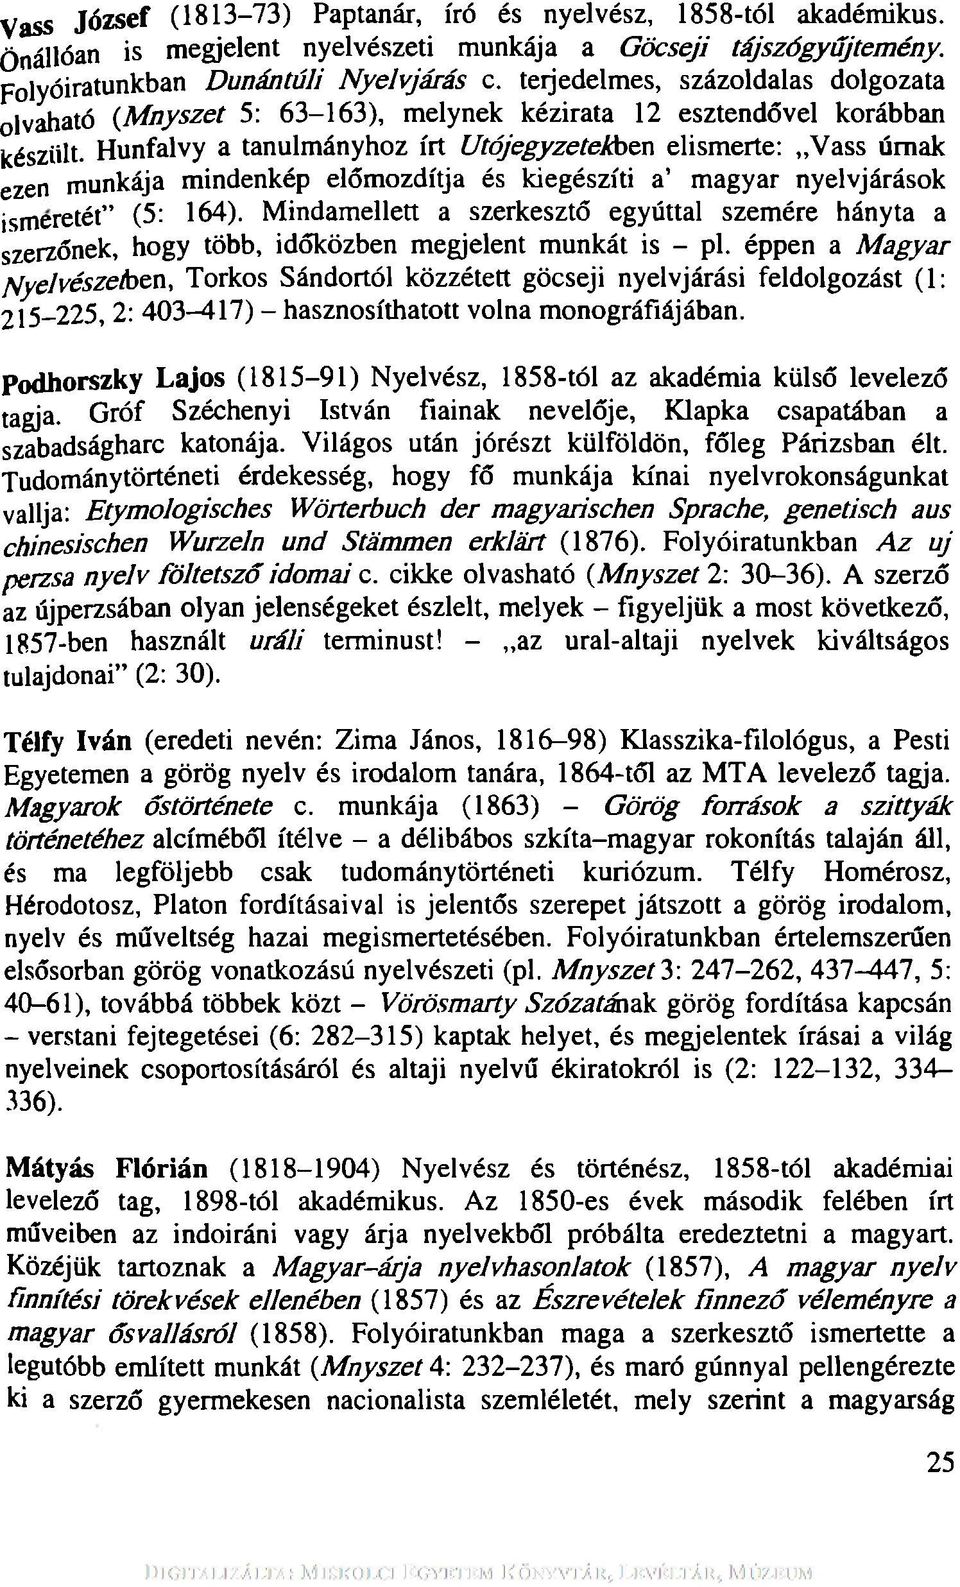 Hunfalvy a tanulmányhoz írt U tójegyzetekben elismerte: Vass úrnak ezen munkája mindenkép előmozdítja és kiegészíti a magyar nyelvjárások ism eretét (5: 164).